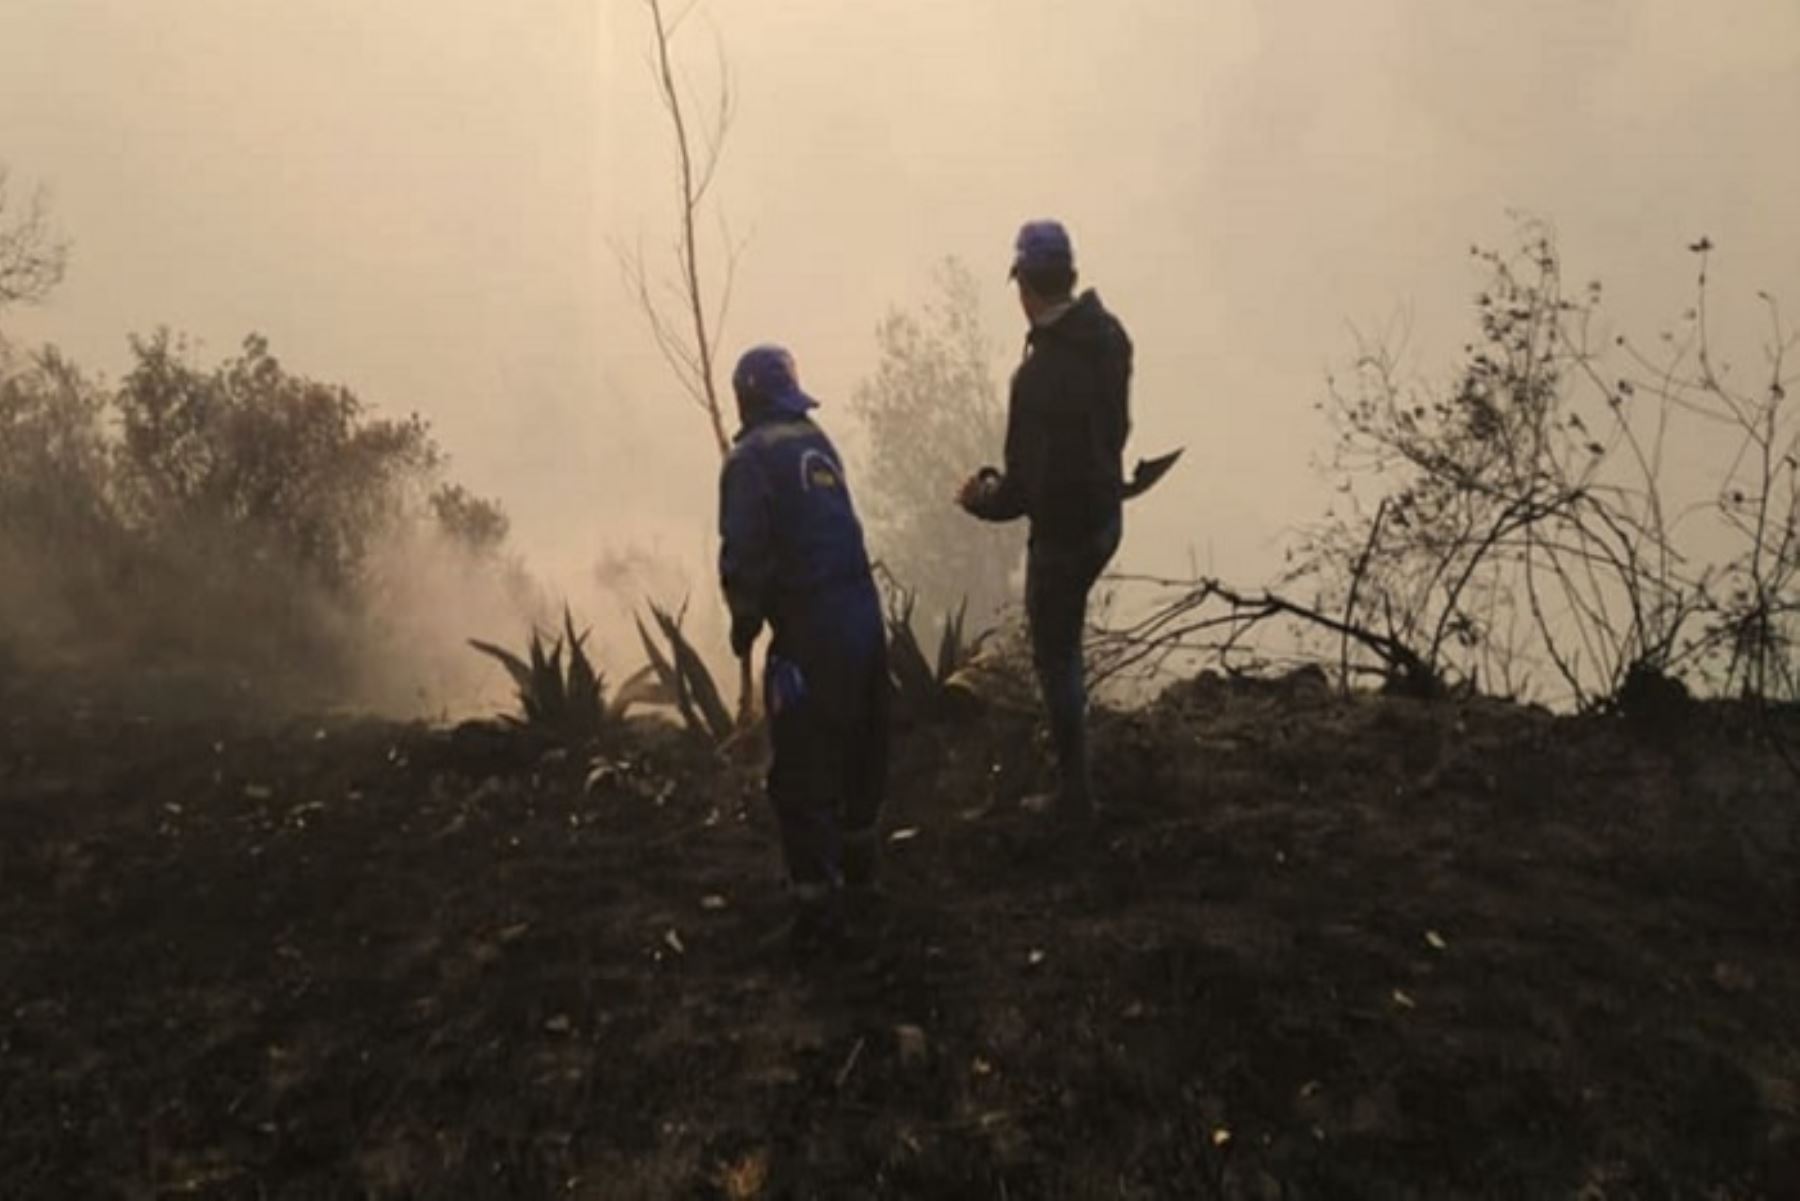 Un incendio forestal destruyó más de 30 hectáreas de plantaciones, árboles de eucalipto y pastizales en el distrito de Chacayán, provincia de Daniel Alcides Carrión, región Pasco, reportó la plataforma distrital de Defensa Civil.